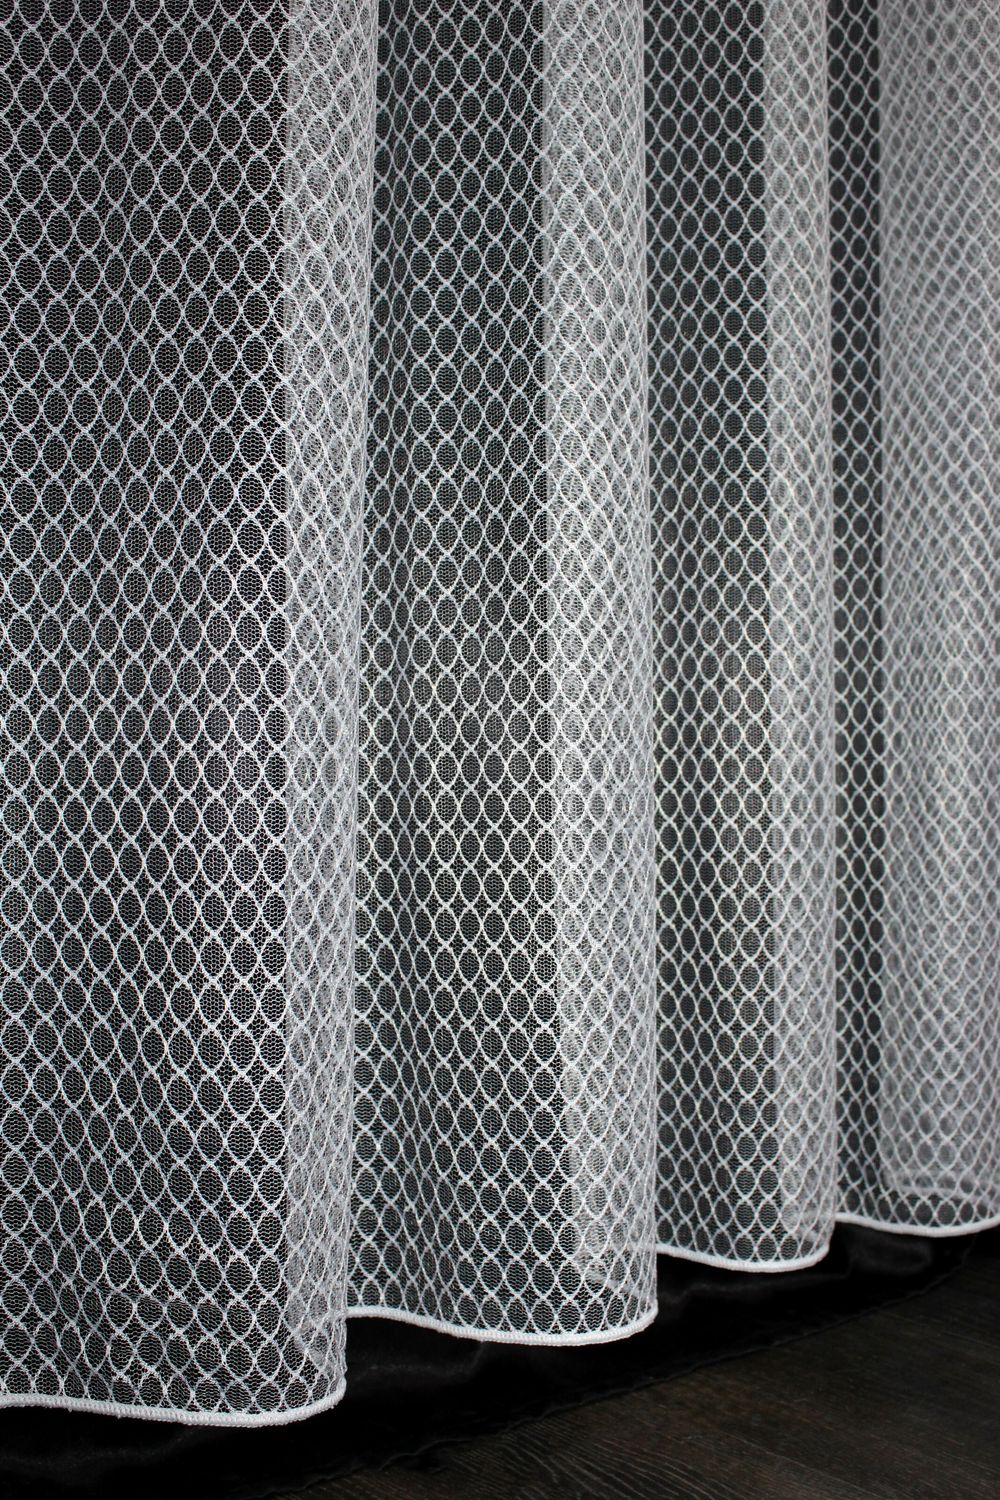 Тюль сетка, коллекция "Стелла", высотой 3м цвет белый 959т, Тюль на метраж, Нужную Вам ширину указывайте при покупке. (Ширина набирается по длине рулона.), 3 м.